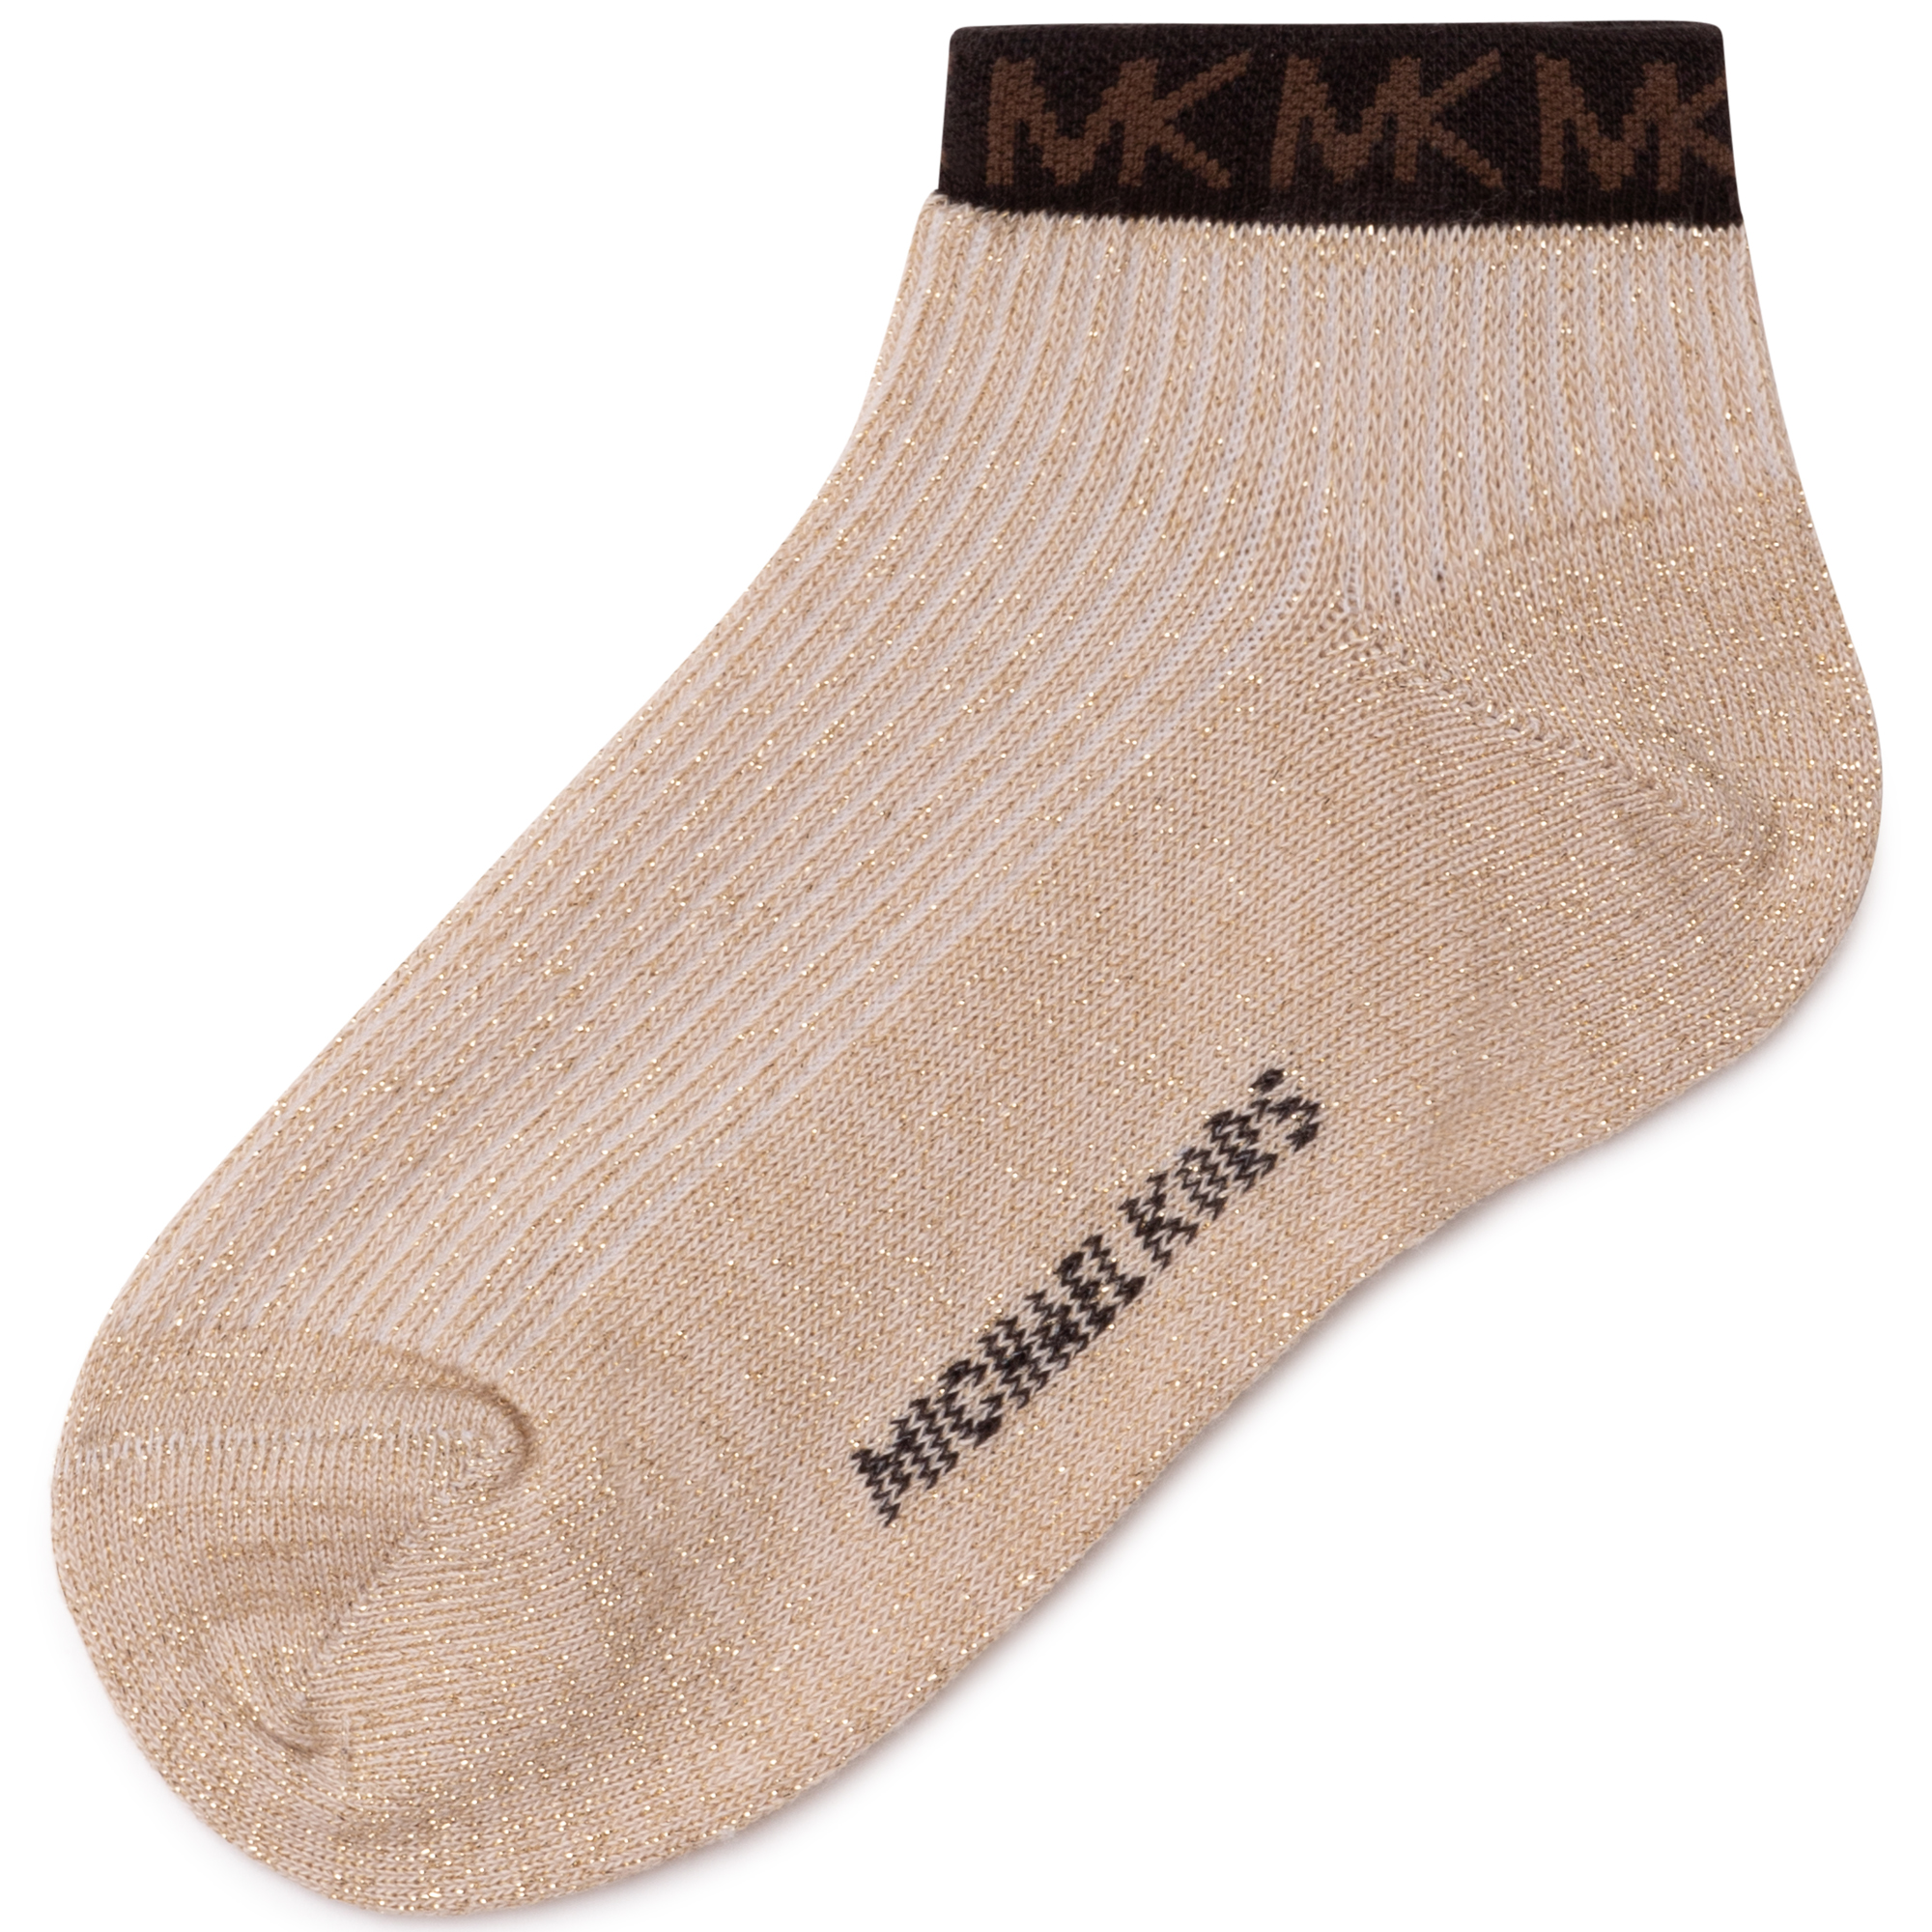 Gold-coloured knit socks MICHAEL KORS for GIRL